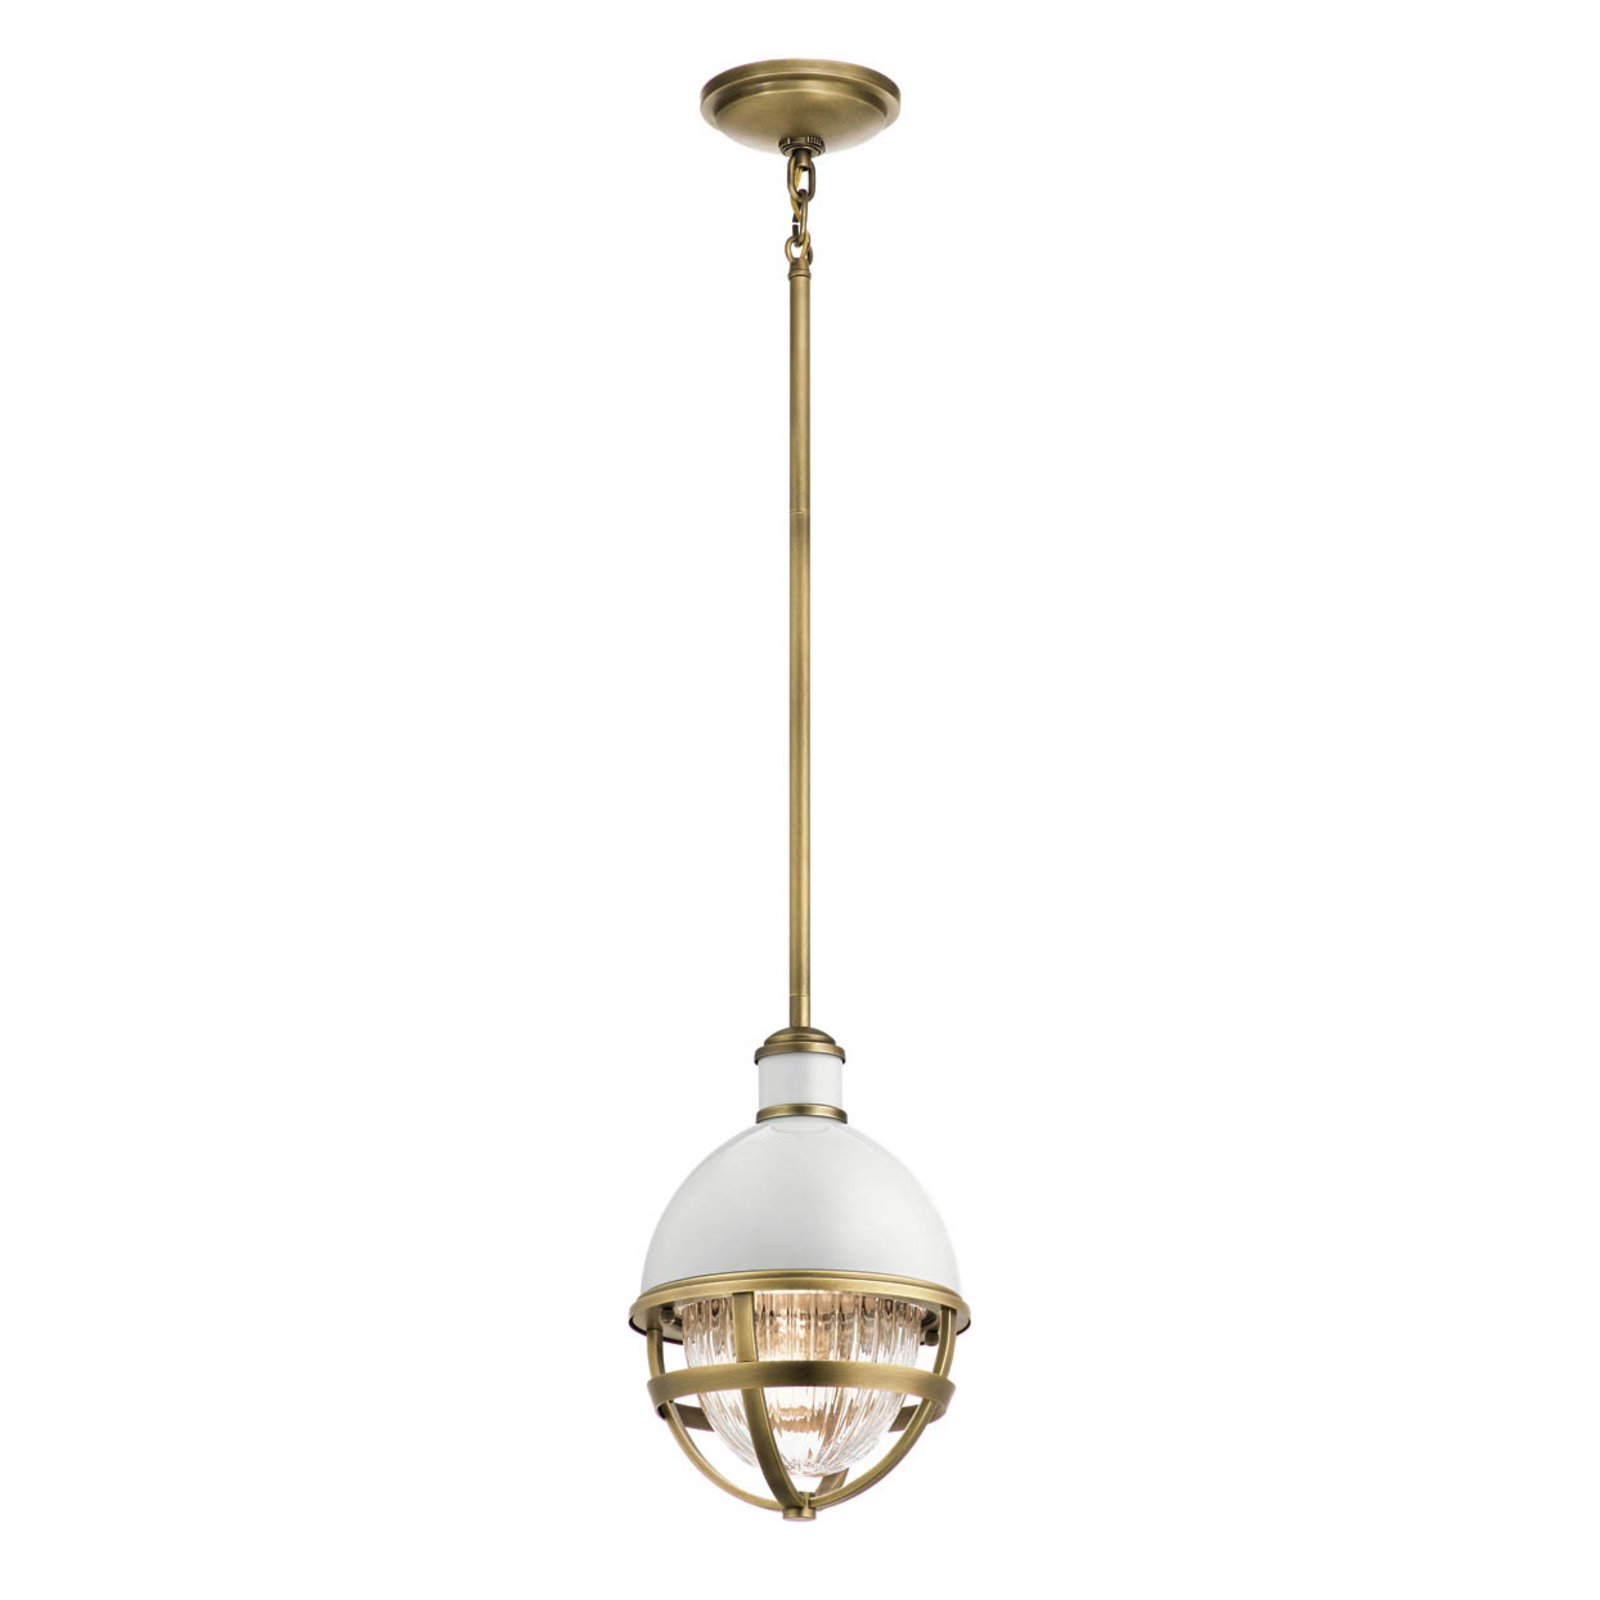 Tollis hanglamp, messing/wit, 1-lamp, Ø 20,4cm